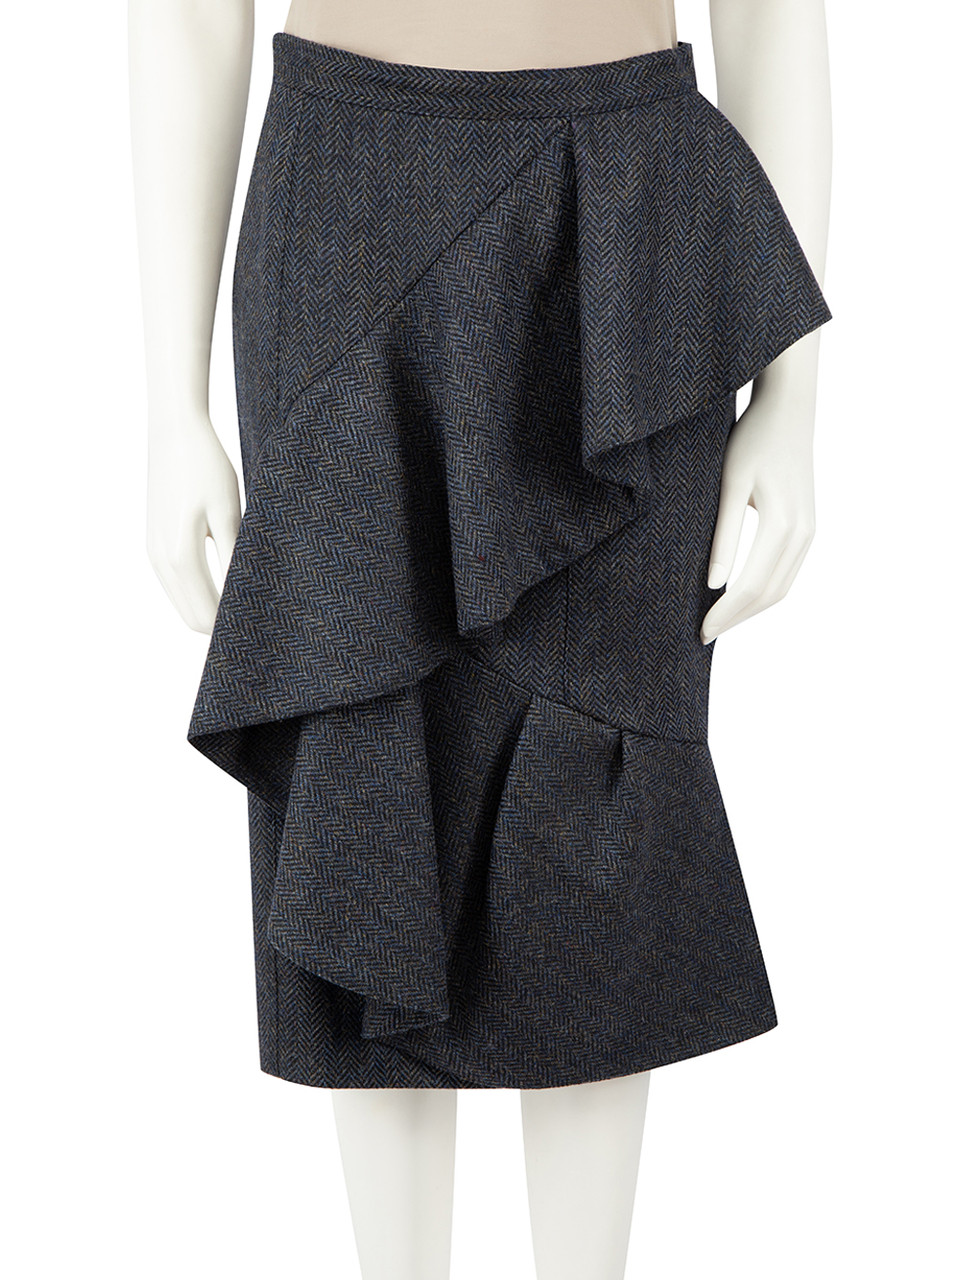 Burberry Burberry Prorsum Navy Wool Herringbone Ruffle Skirt